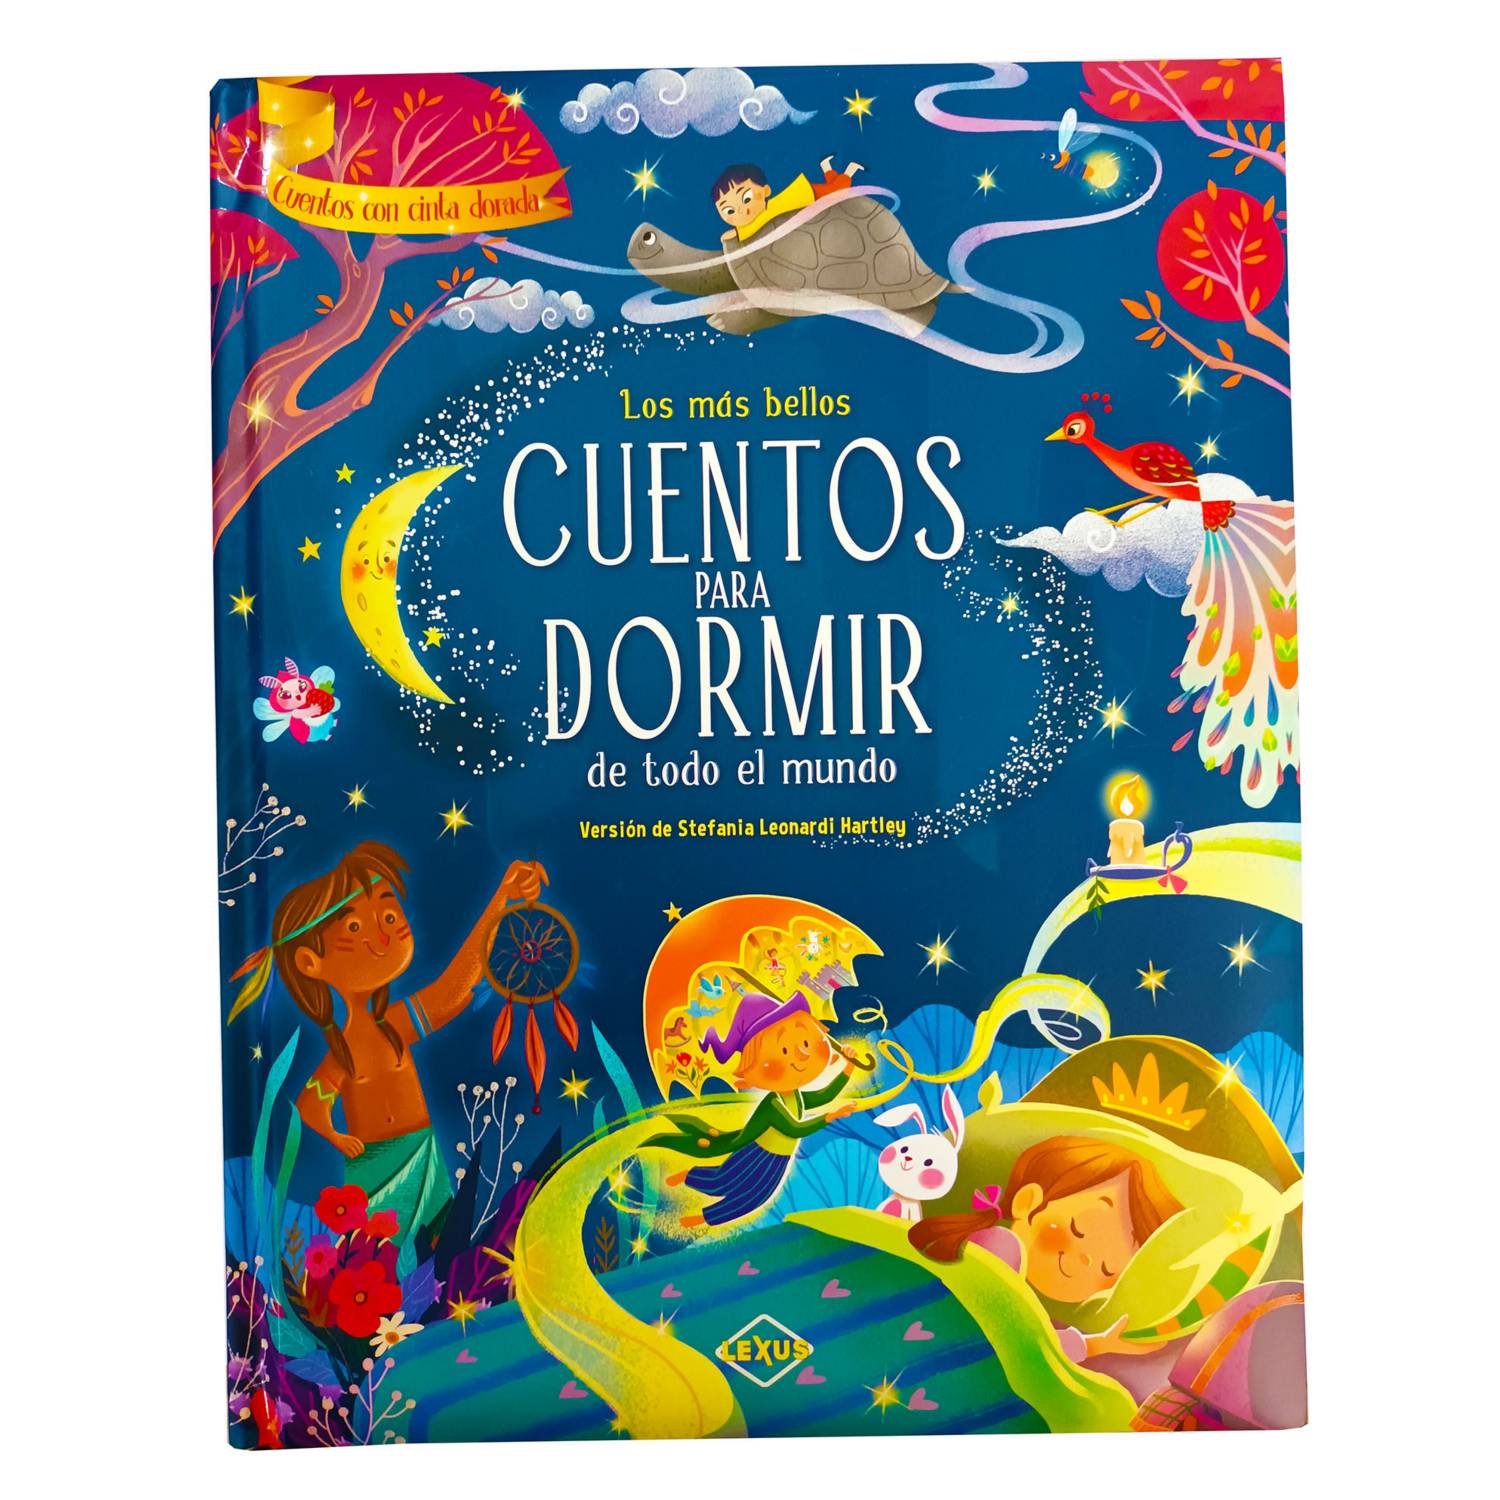 Set de libros de cuentos infantiles Genérico Historias Maravillosas Mis  Queridos Cuentos